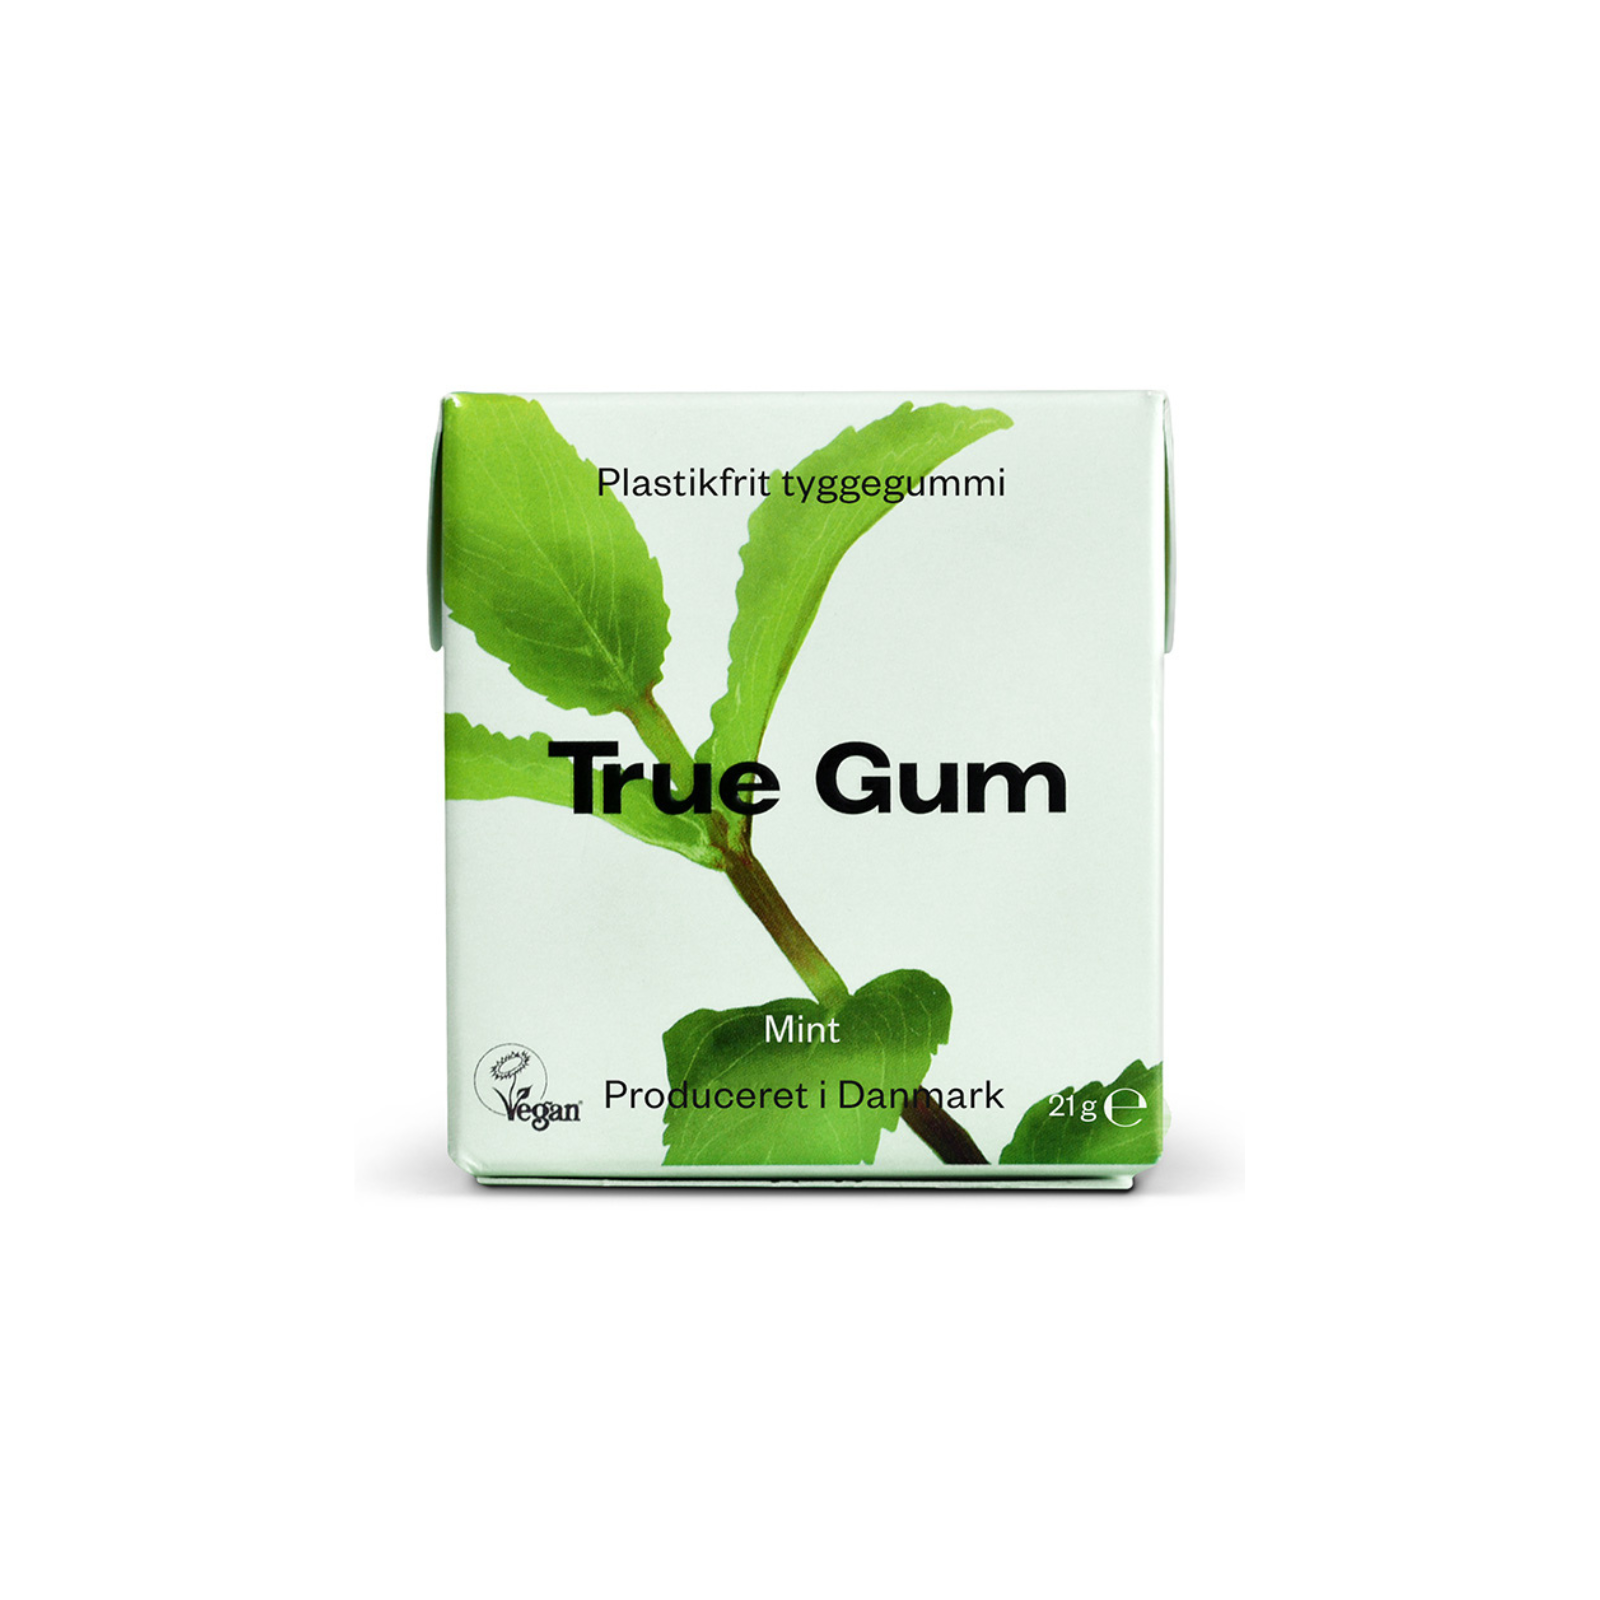 True Gum mint og matcha